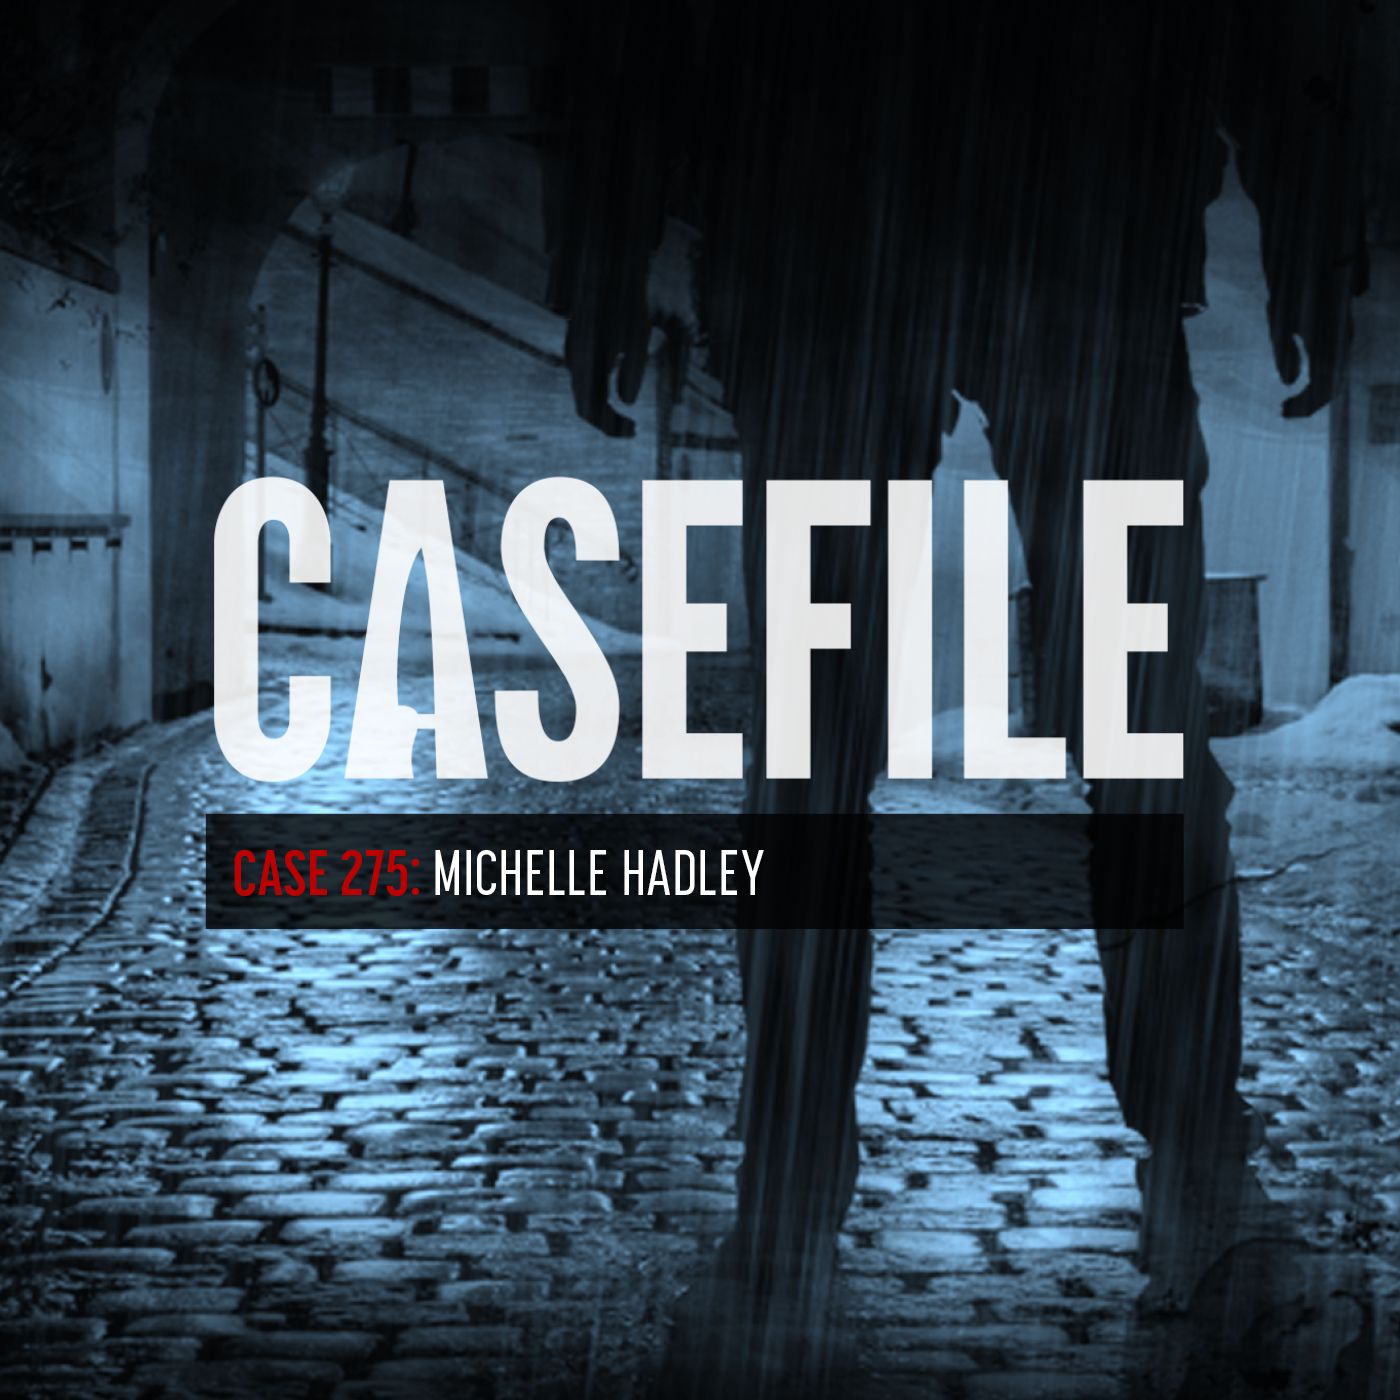 Case 275: Michelle Hadley